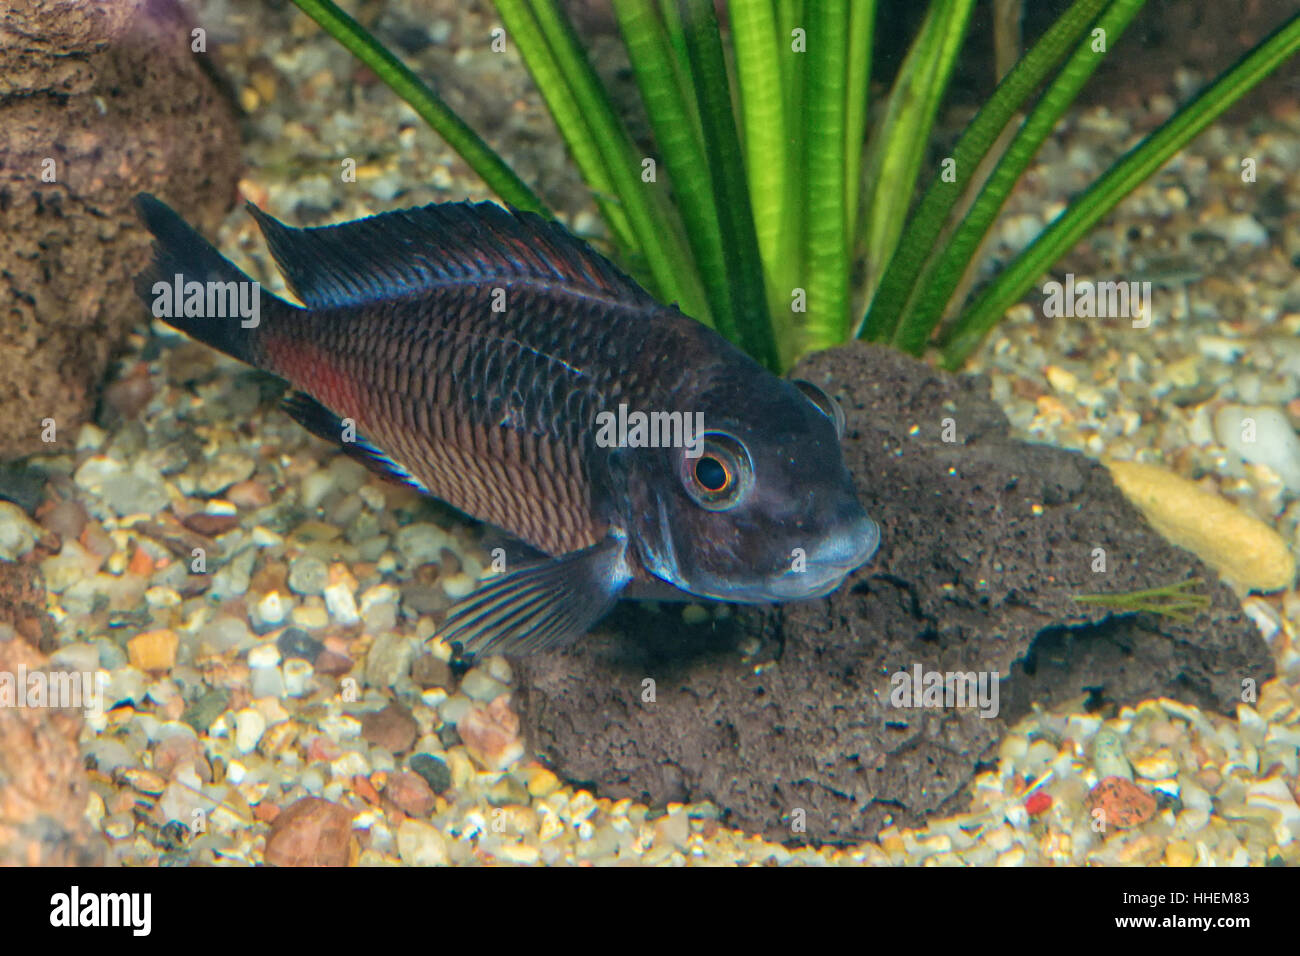 Portrait of cichlid fish (Tropheus sp.) in a aquarium Stock Photo